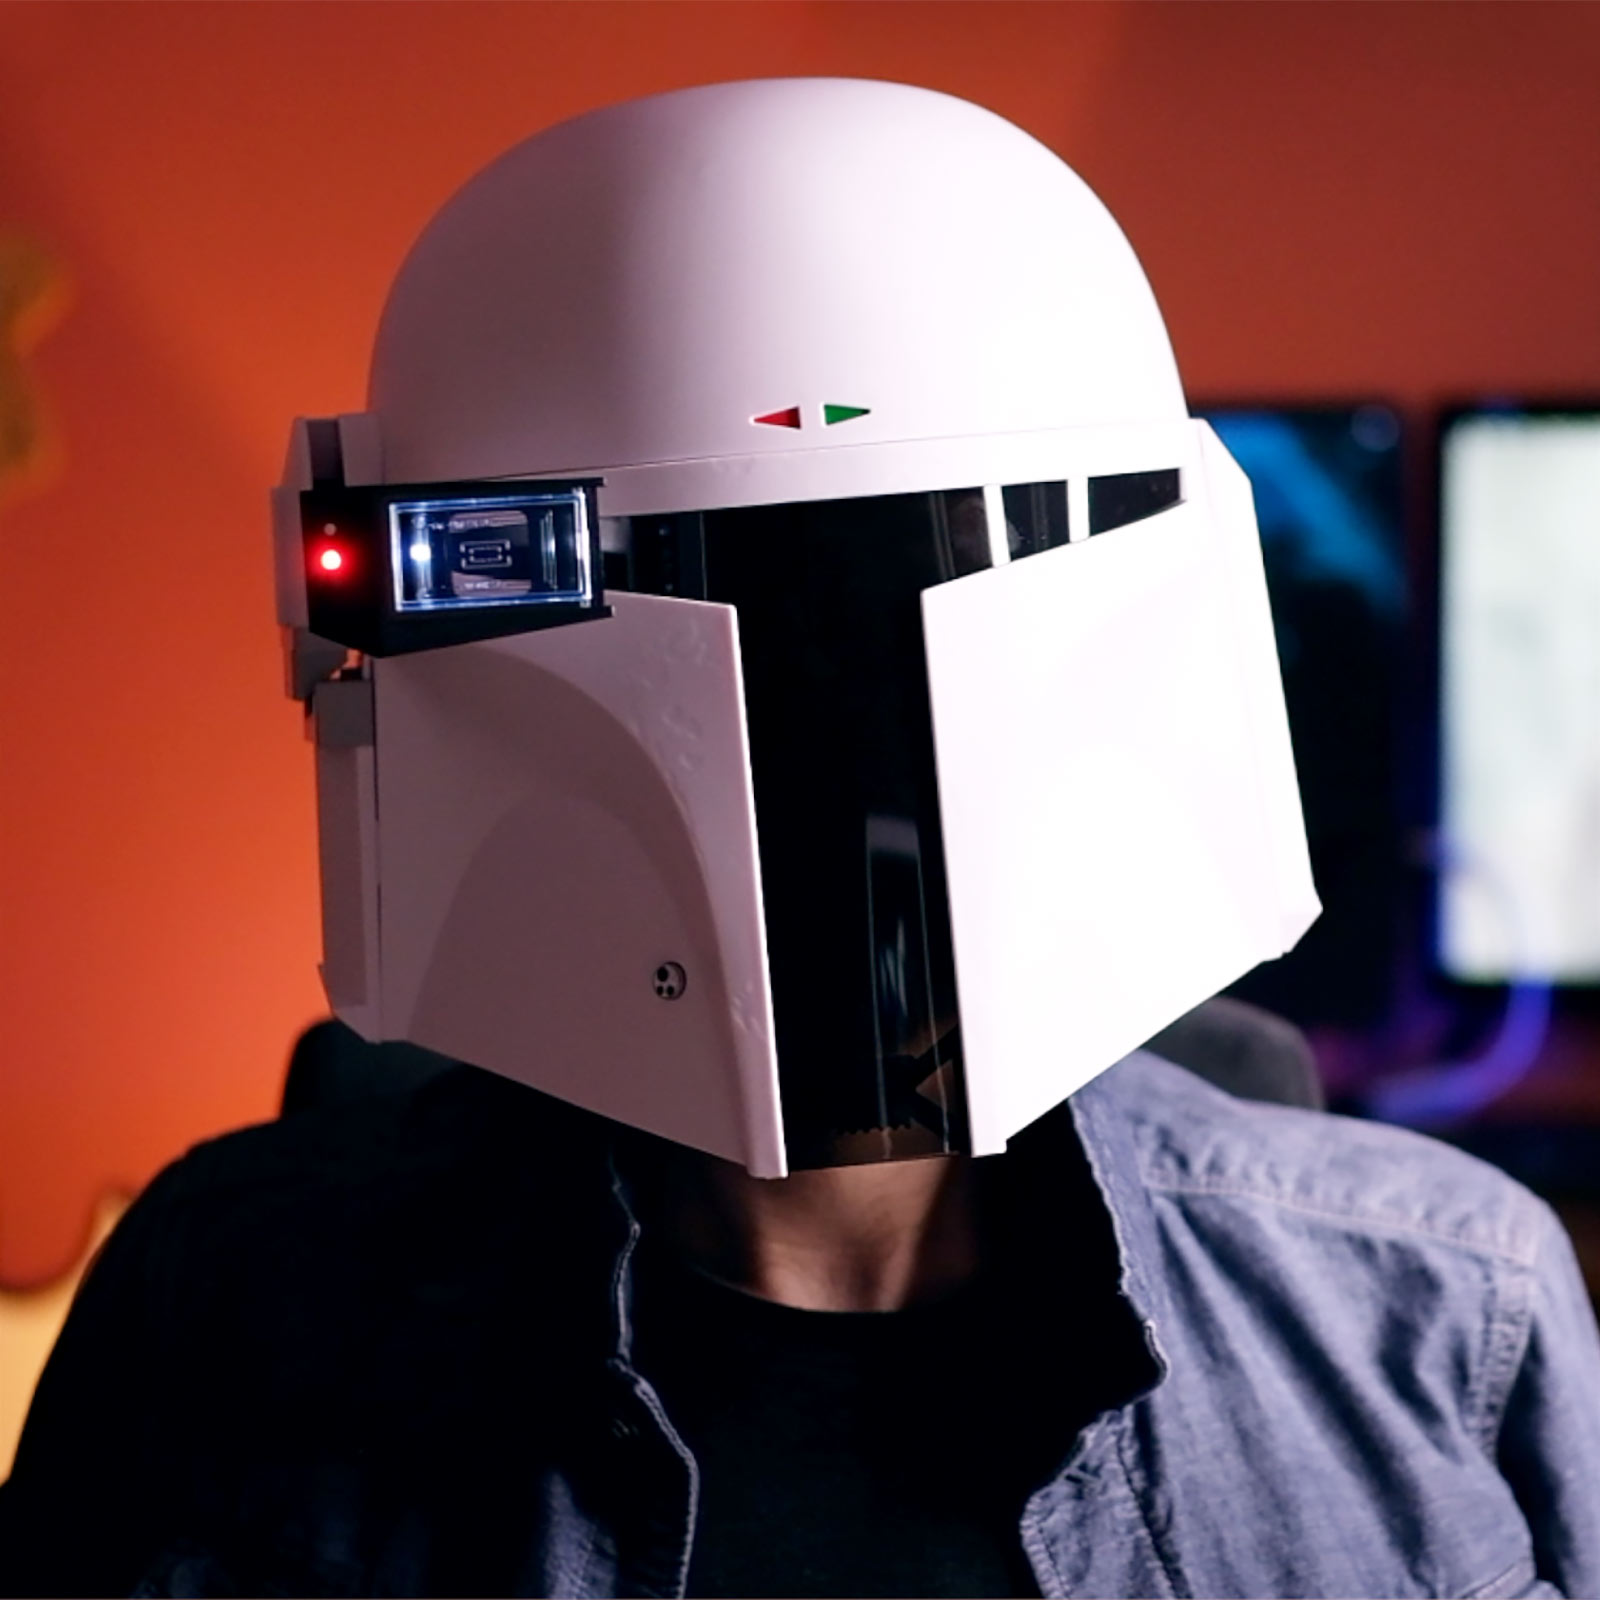 Star Wars - Boba Fett Prototyp Helm Premium Replik mit Lichteffekten